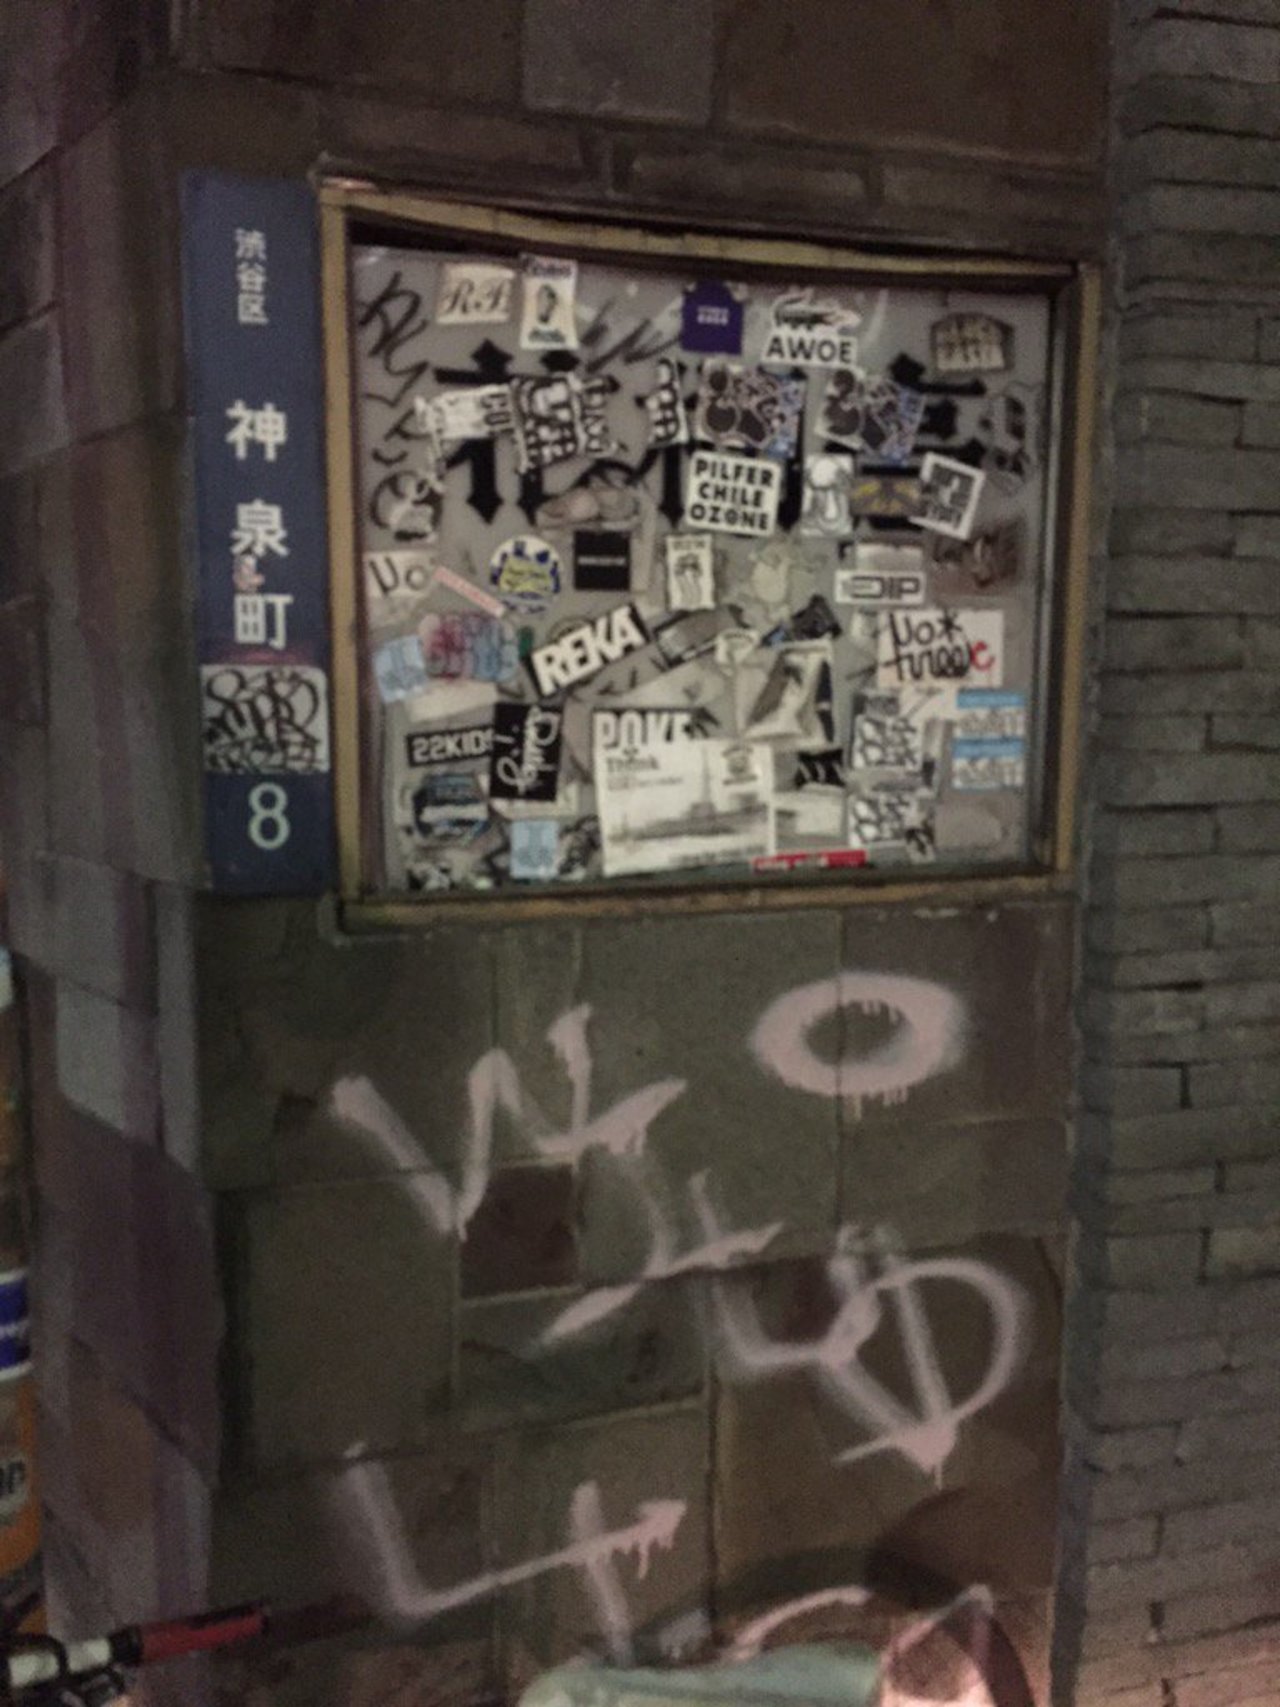 #Tokyo #slaps 

#graffiti #streetart https://t.co/ekaRoMOfn6